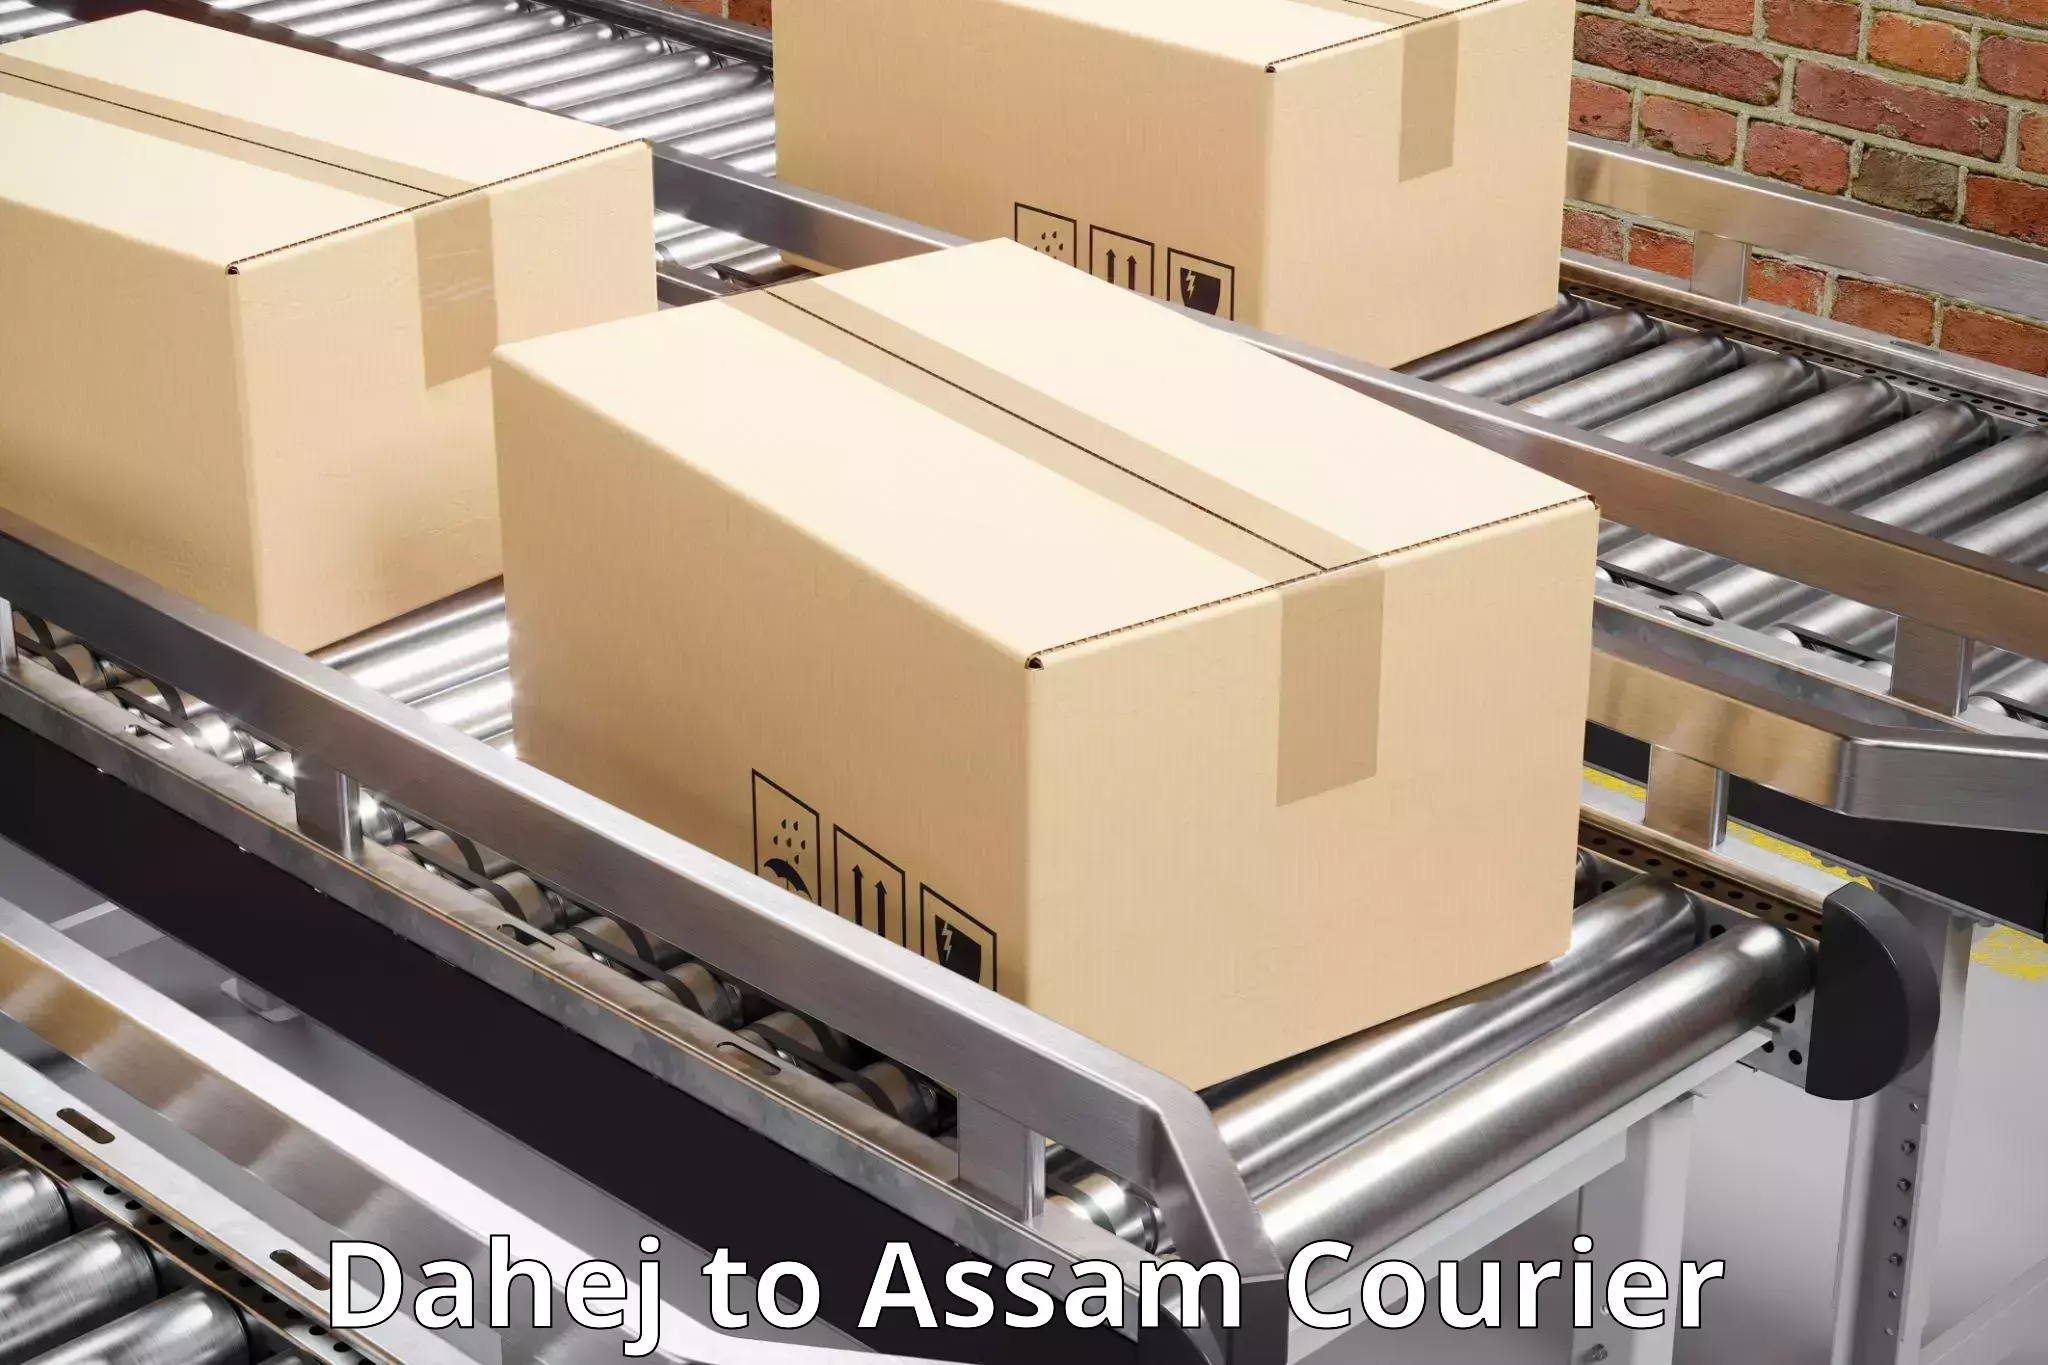 Cargo delivery service Dahej to Dergaon